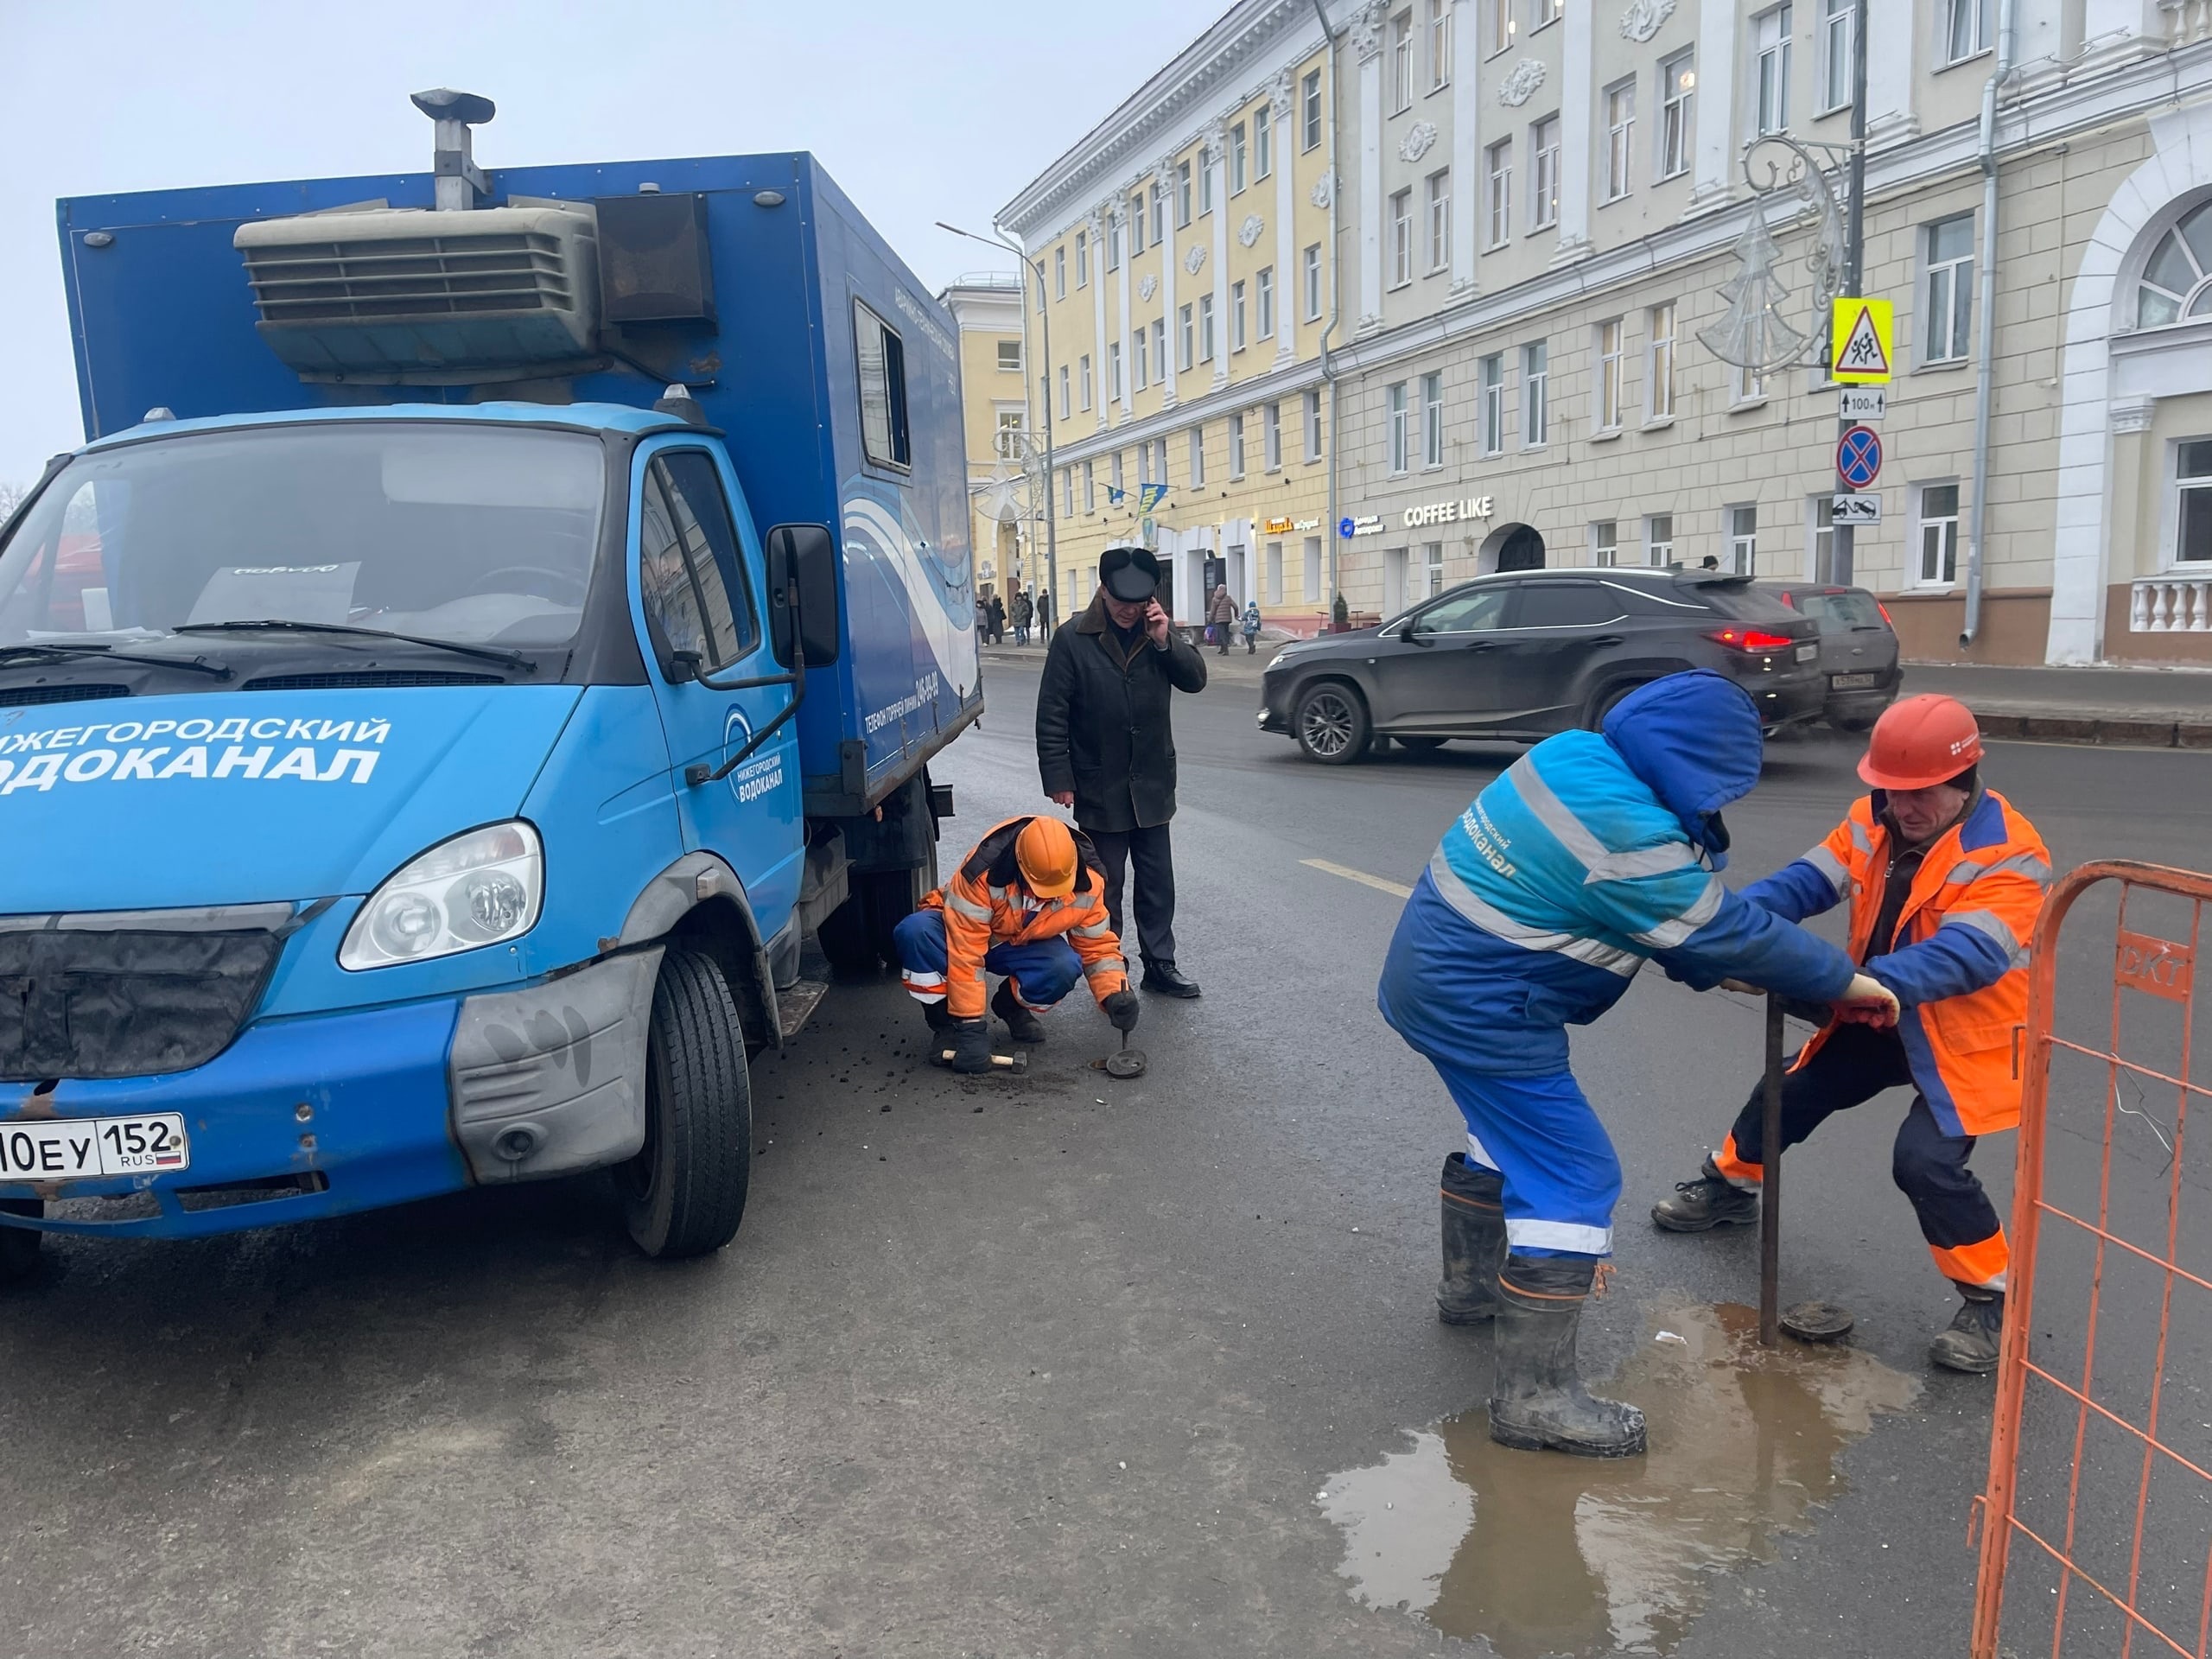 Бригада АО "Нижегородский водоканал" выполняет работы по устранению утечки на площади Минина